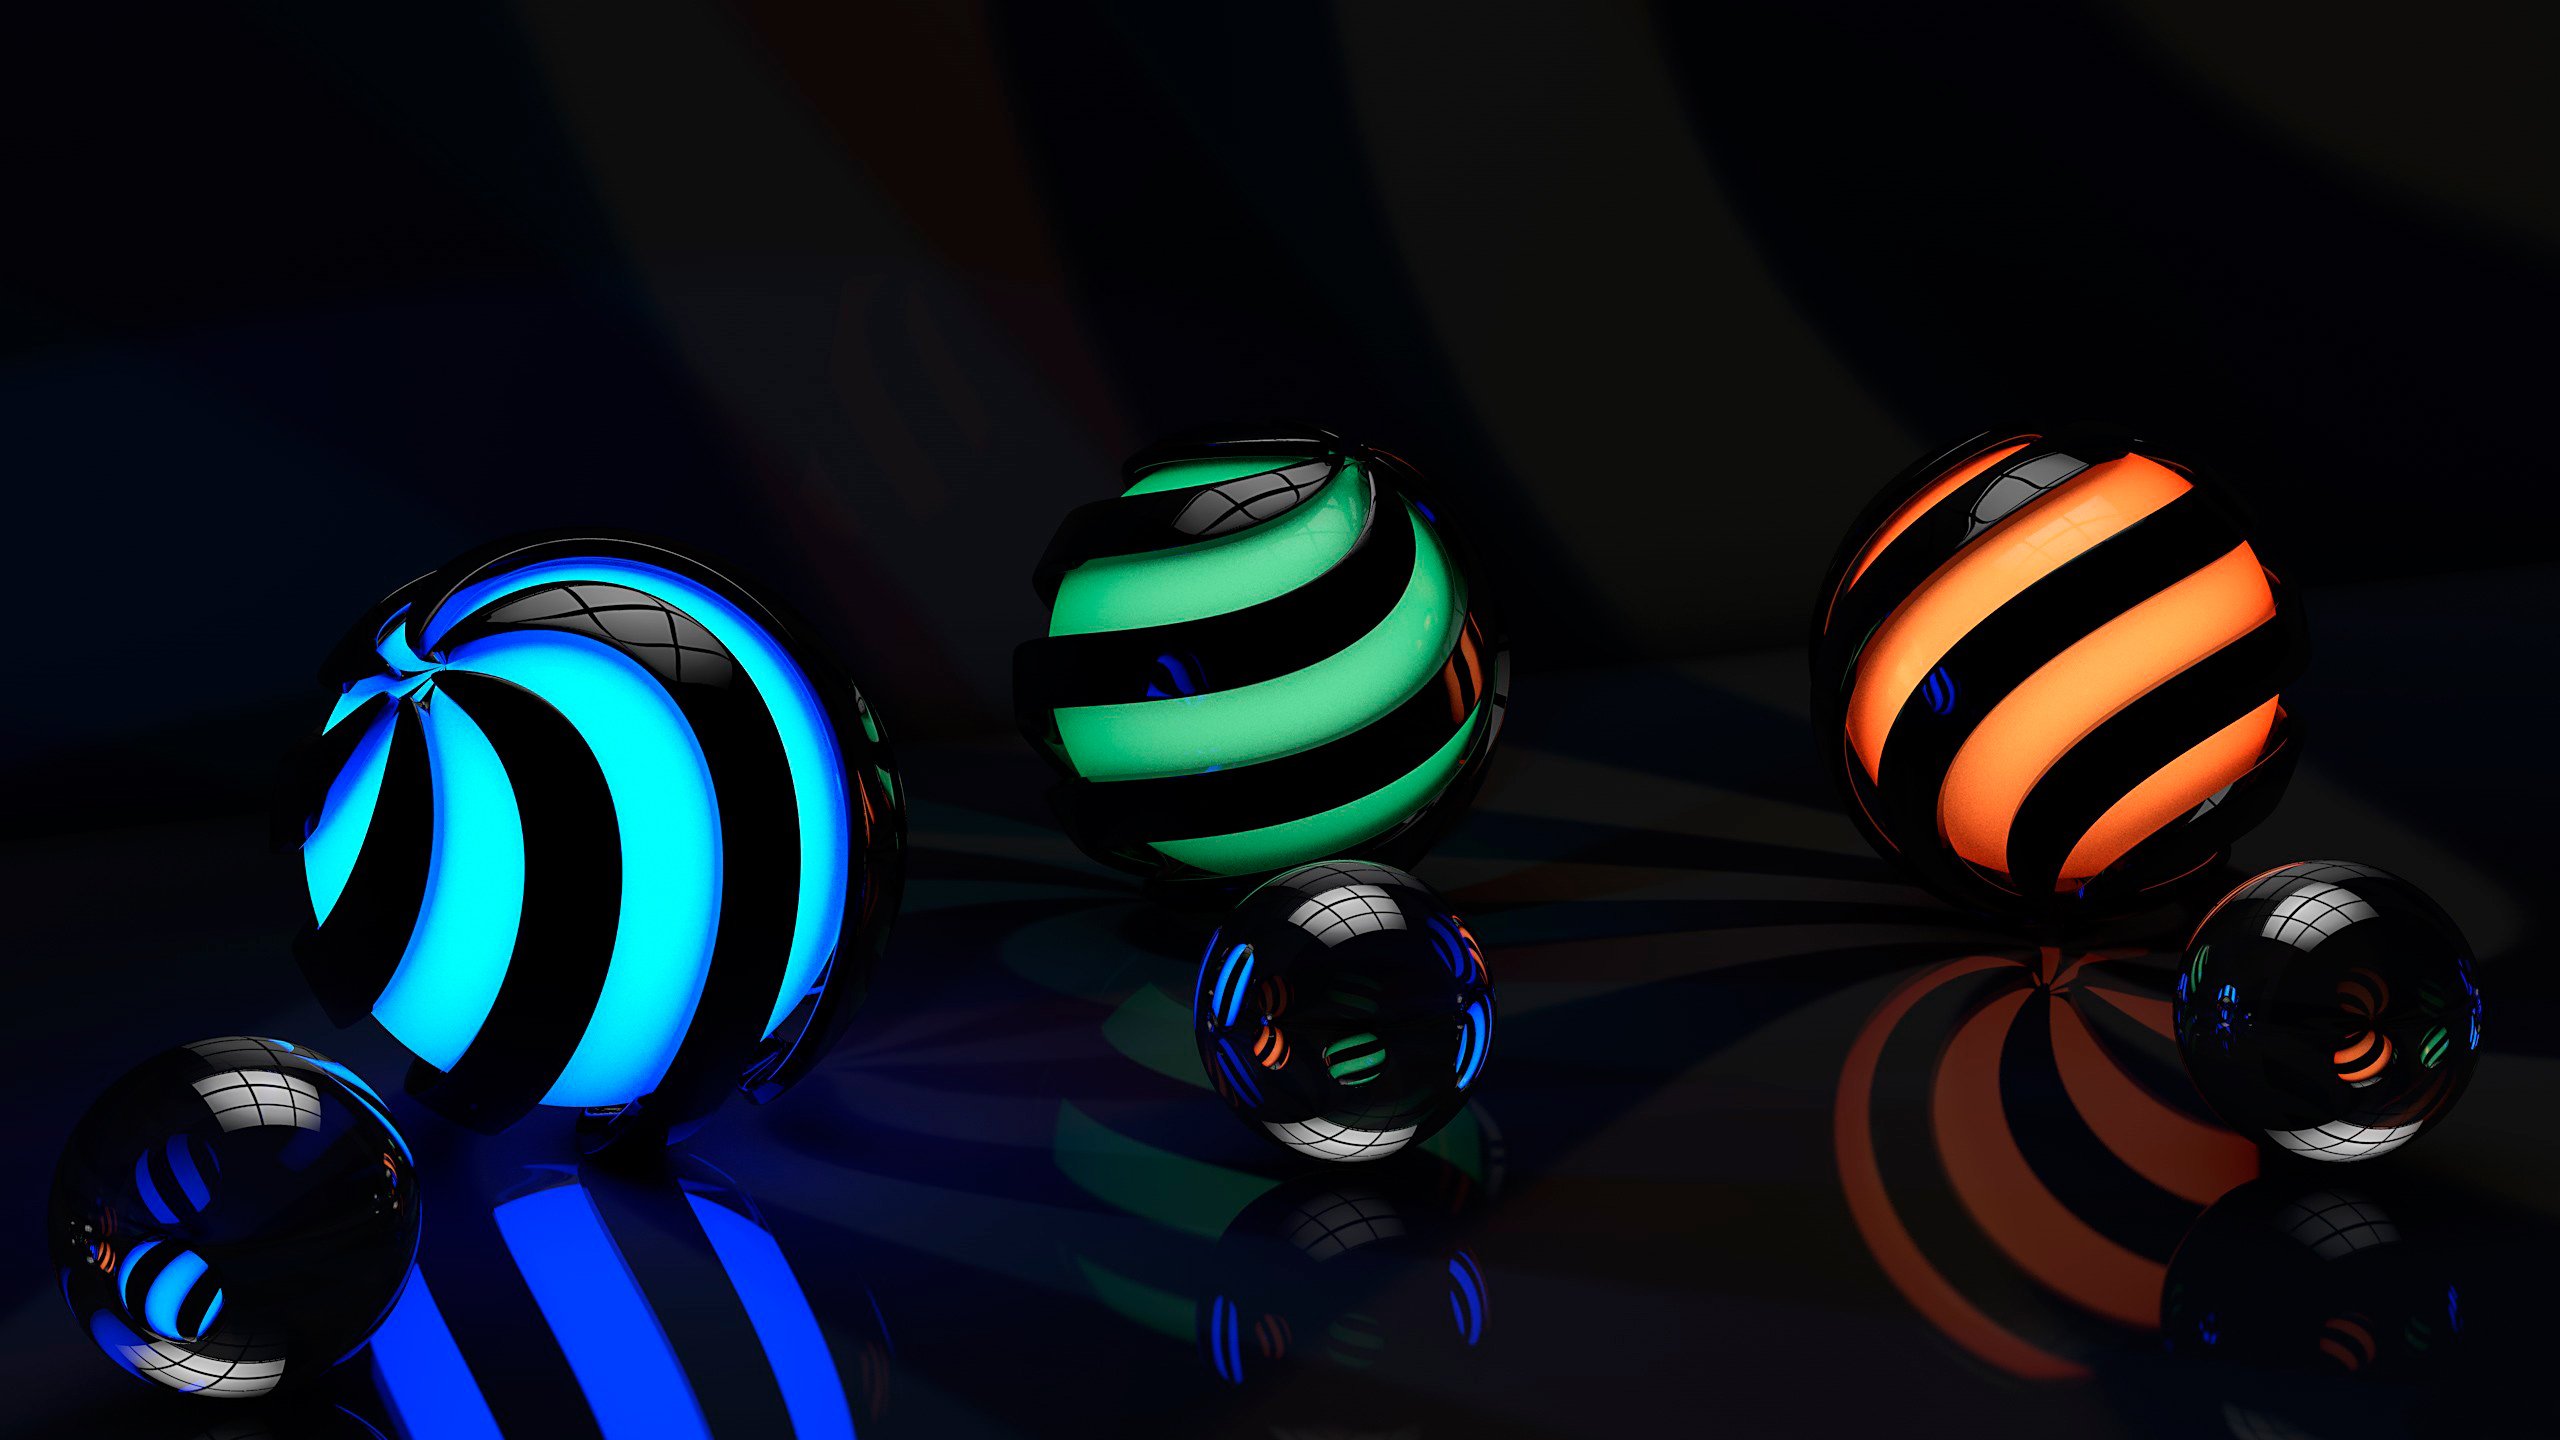 balls, 3D, Green, Blue, Orange Wallpaper HD / Desktop and Mobile Background